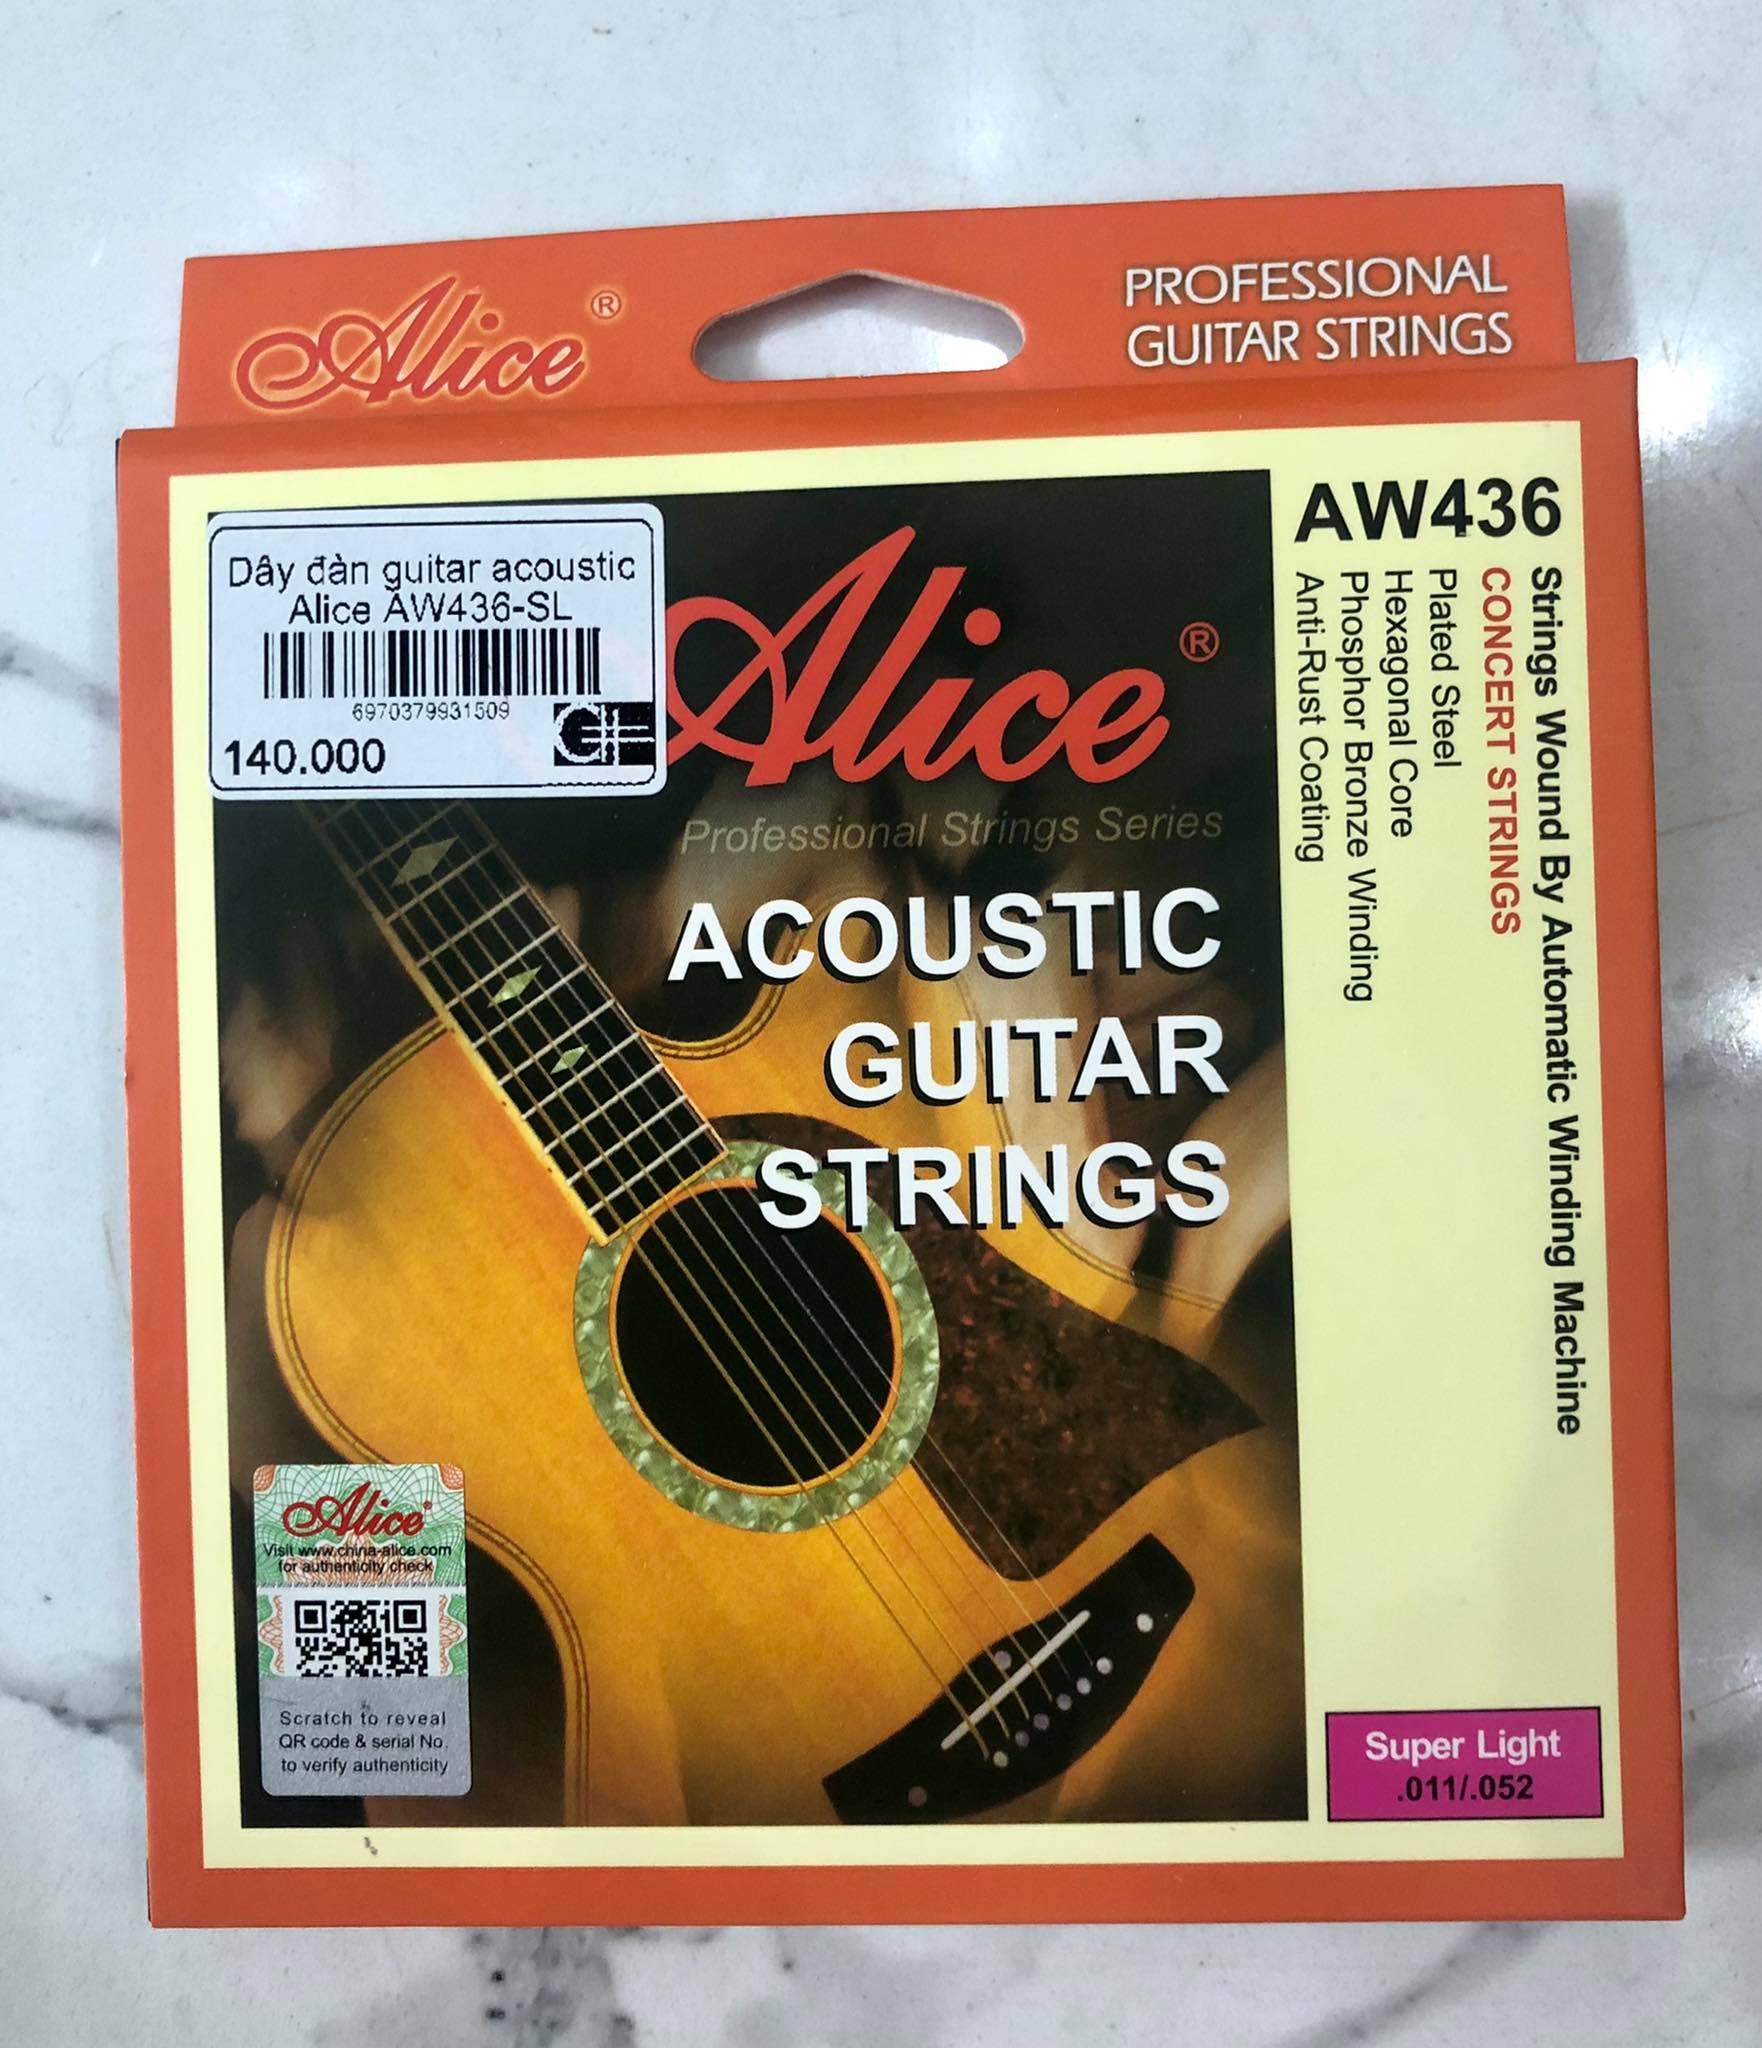 Dây đàn guitar acoustic Alice AW436-SL